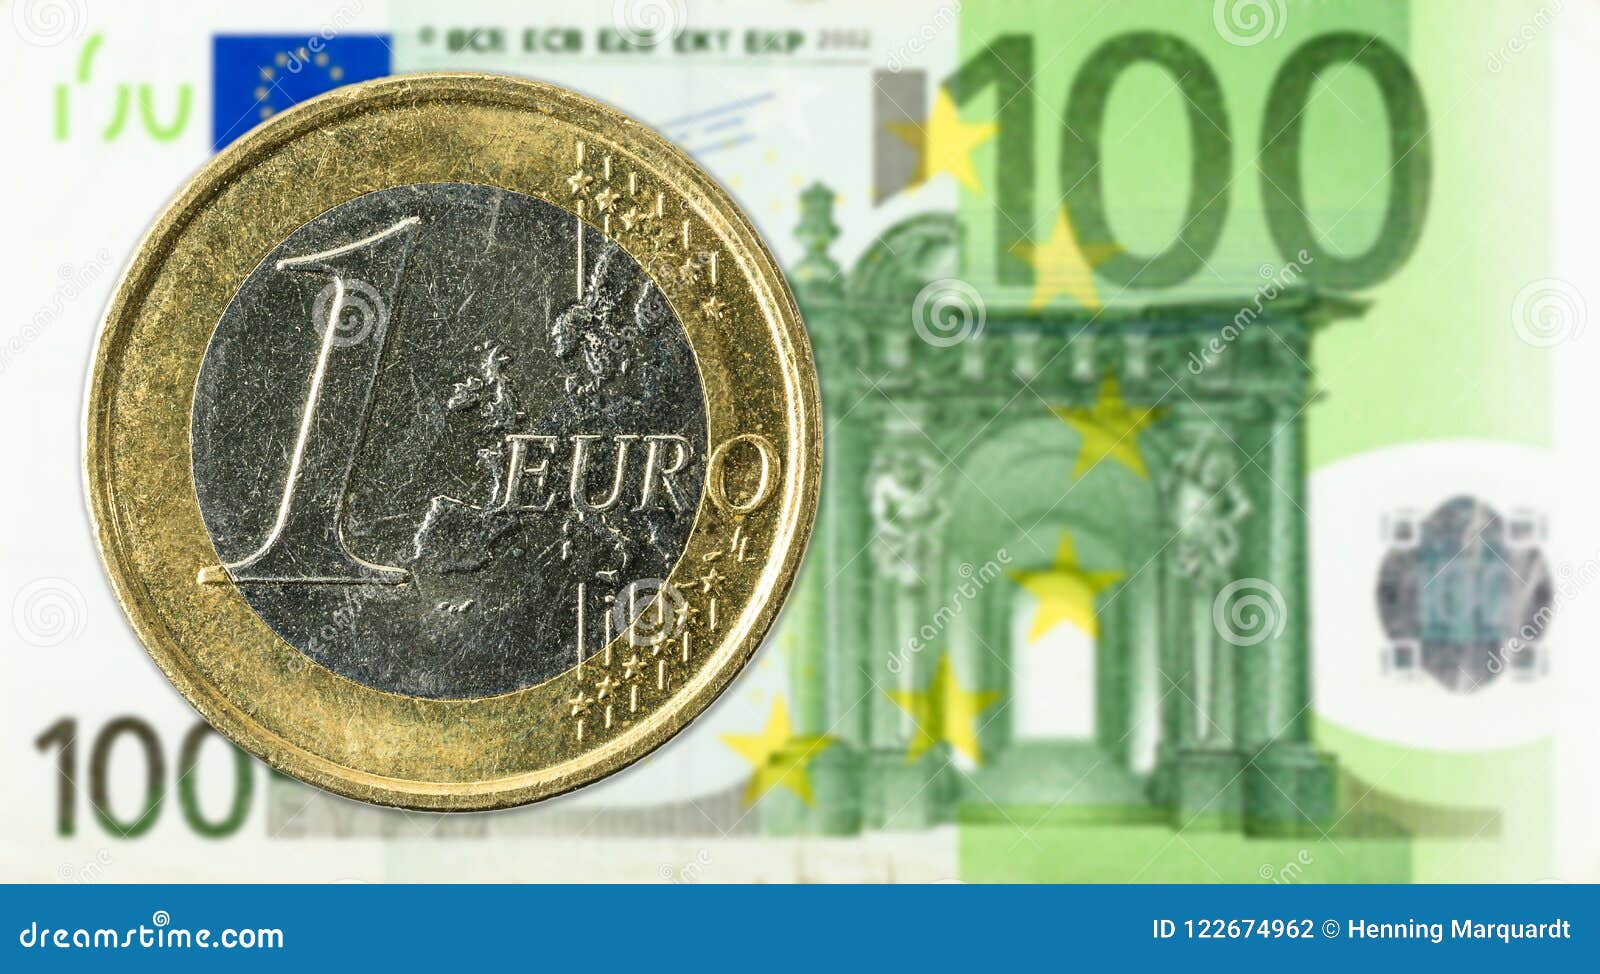 Le Monete Da 1 Euro Contro Il Complemento Della Banconota Dell